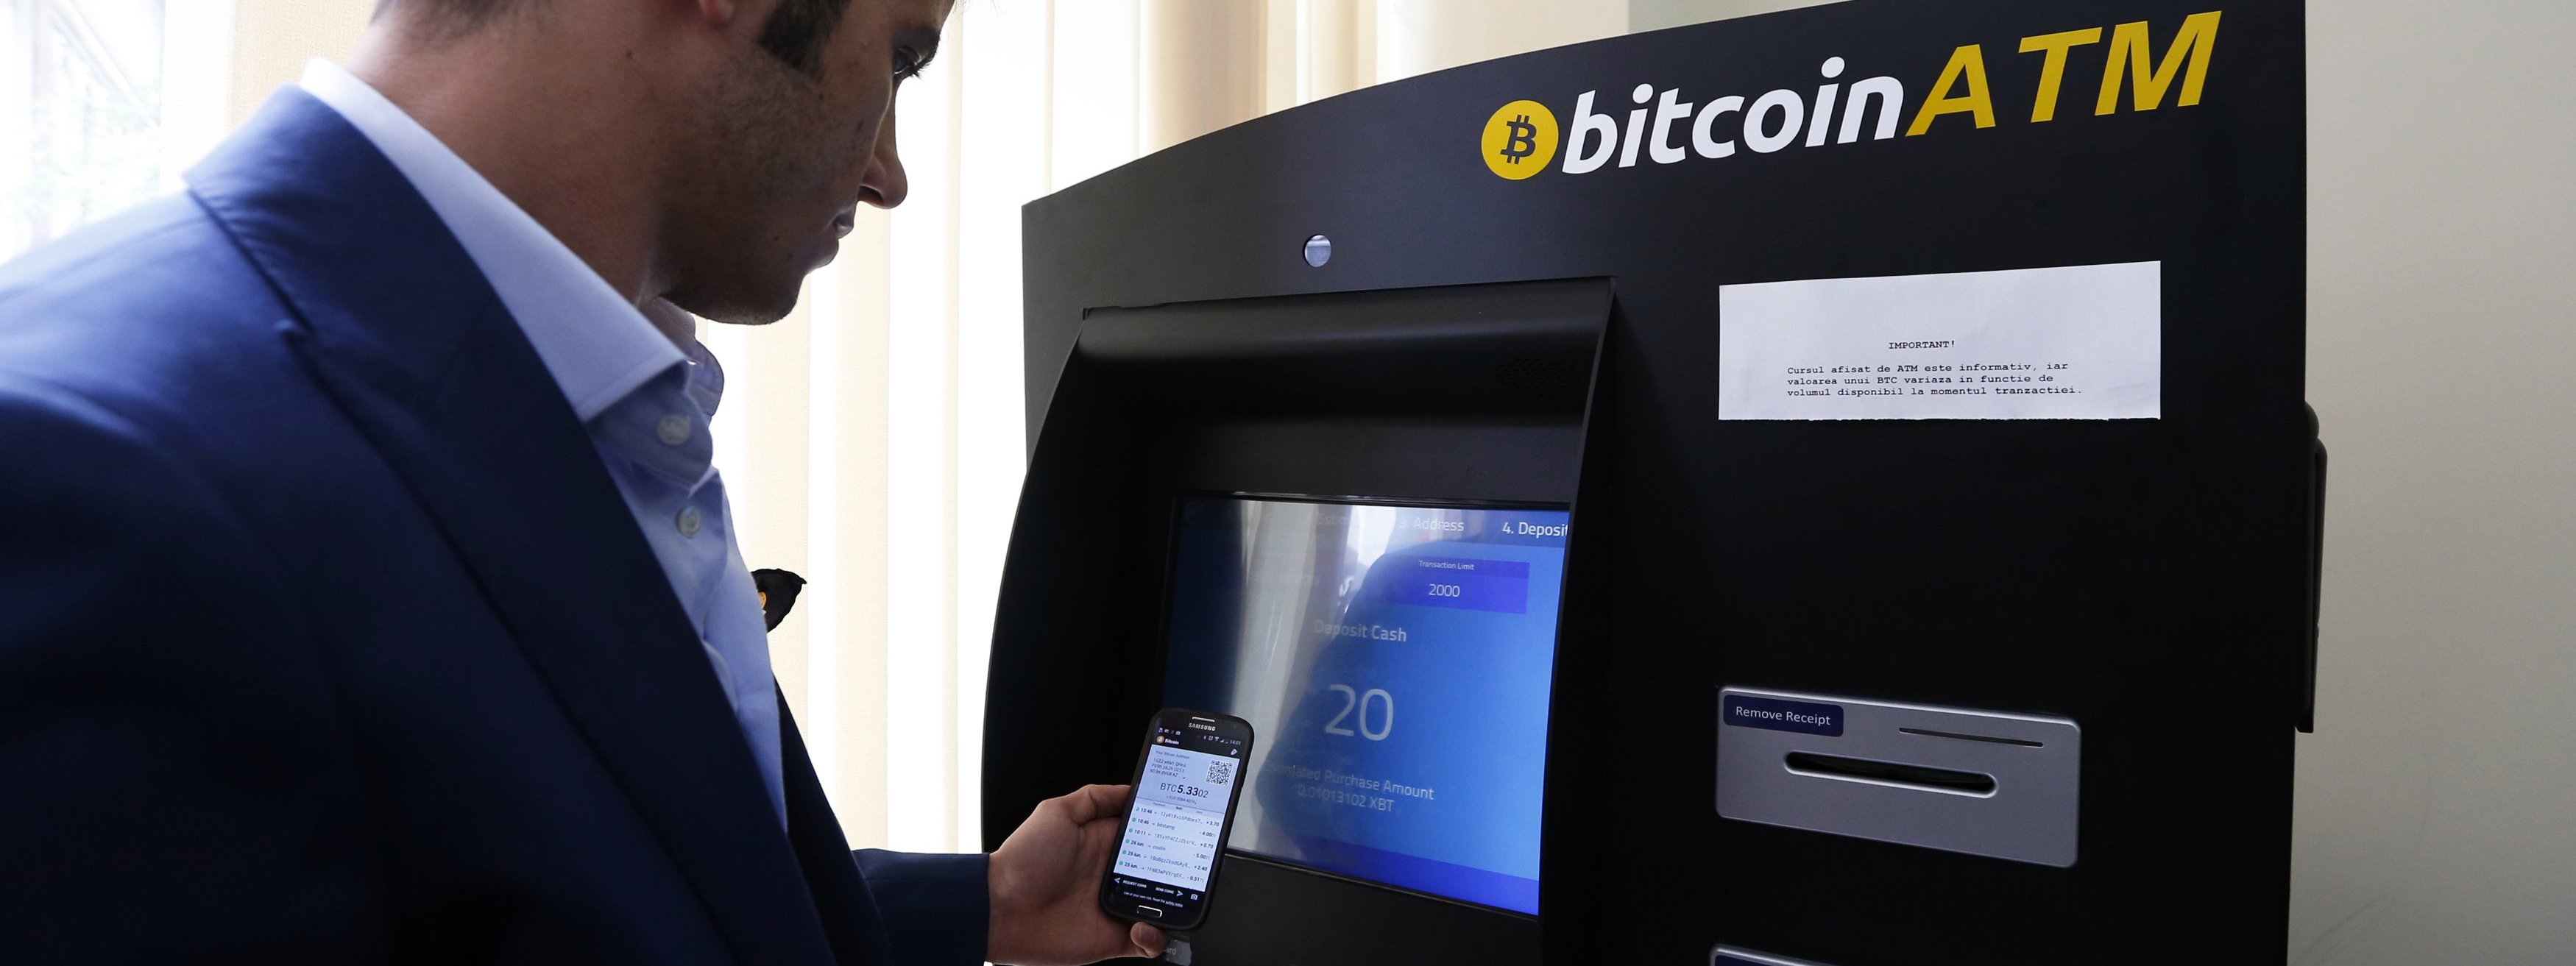 Máy Bitcoin ATM là gì và số lượng Bitcoin ATM ở các quốc gia